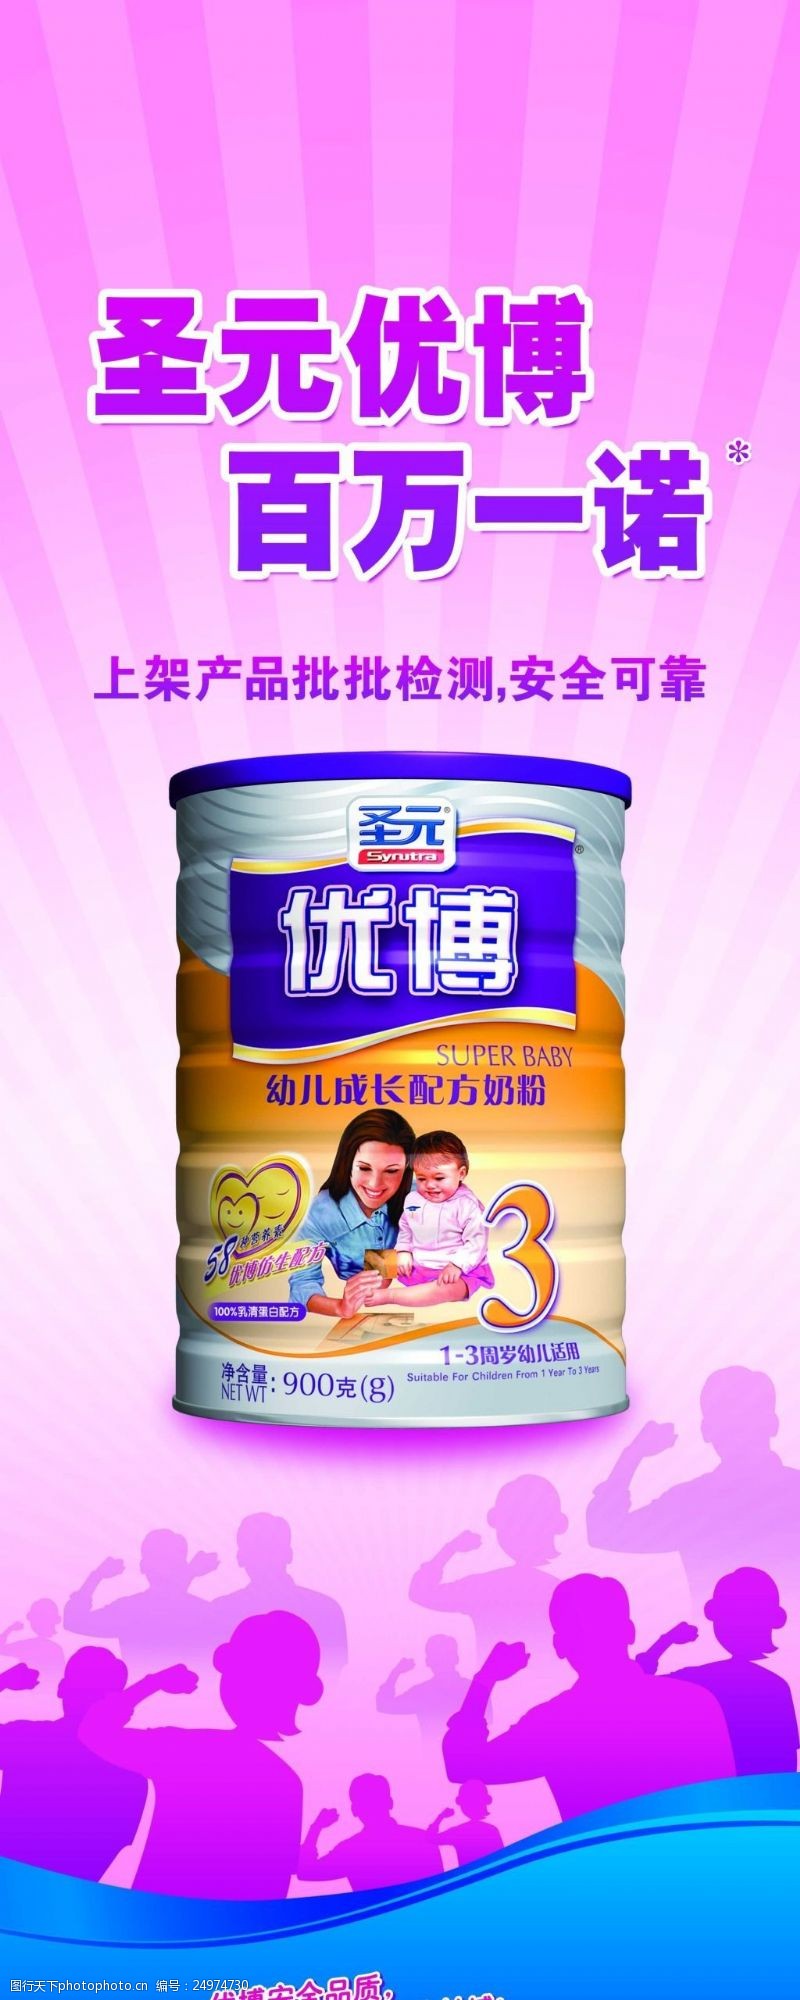 粉色背景易拉宝奶粉食品宣传展板设计